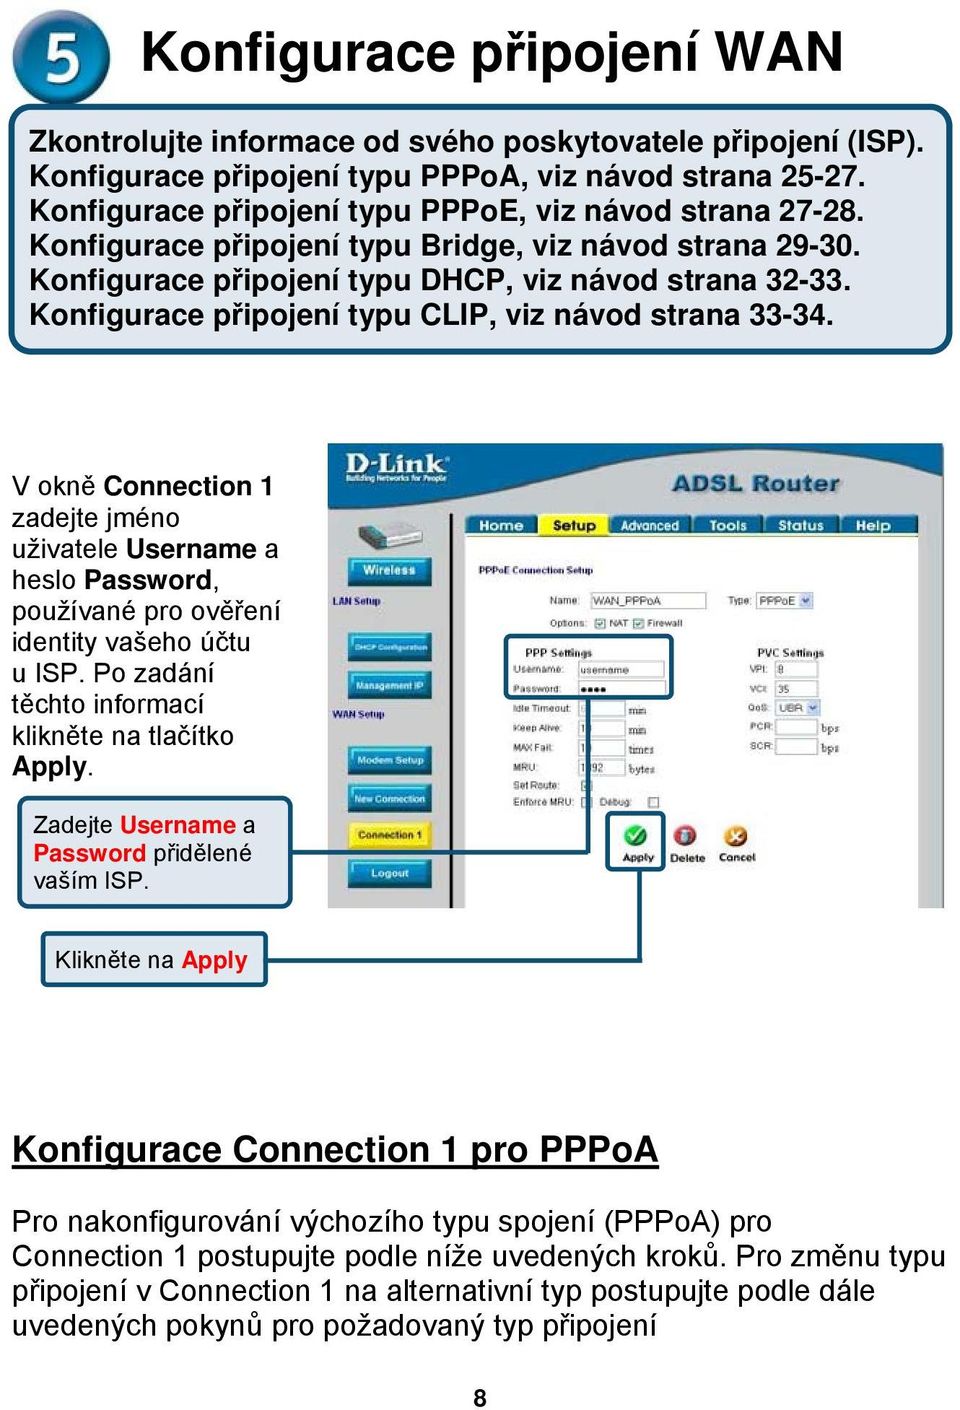 Konfigurace připojení typu CLIP, viz návod strana 33-34. V okně Connection 1 zadejte jméno uživatele Username a heslo Password, používané pro ověření identity vašeho účtu u ISP.